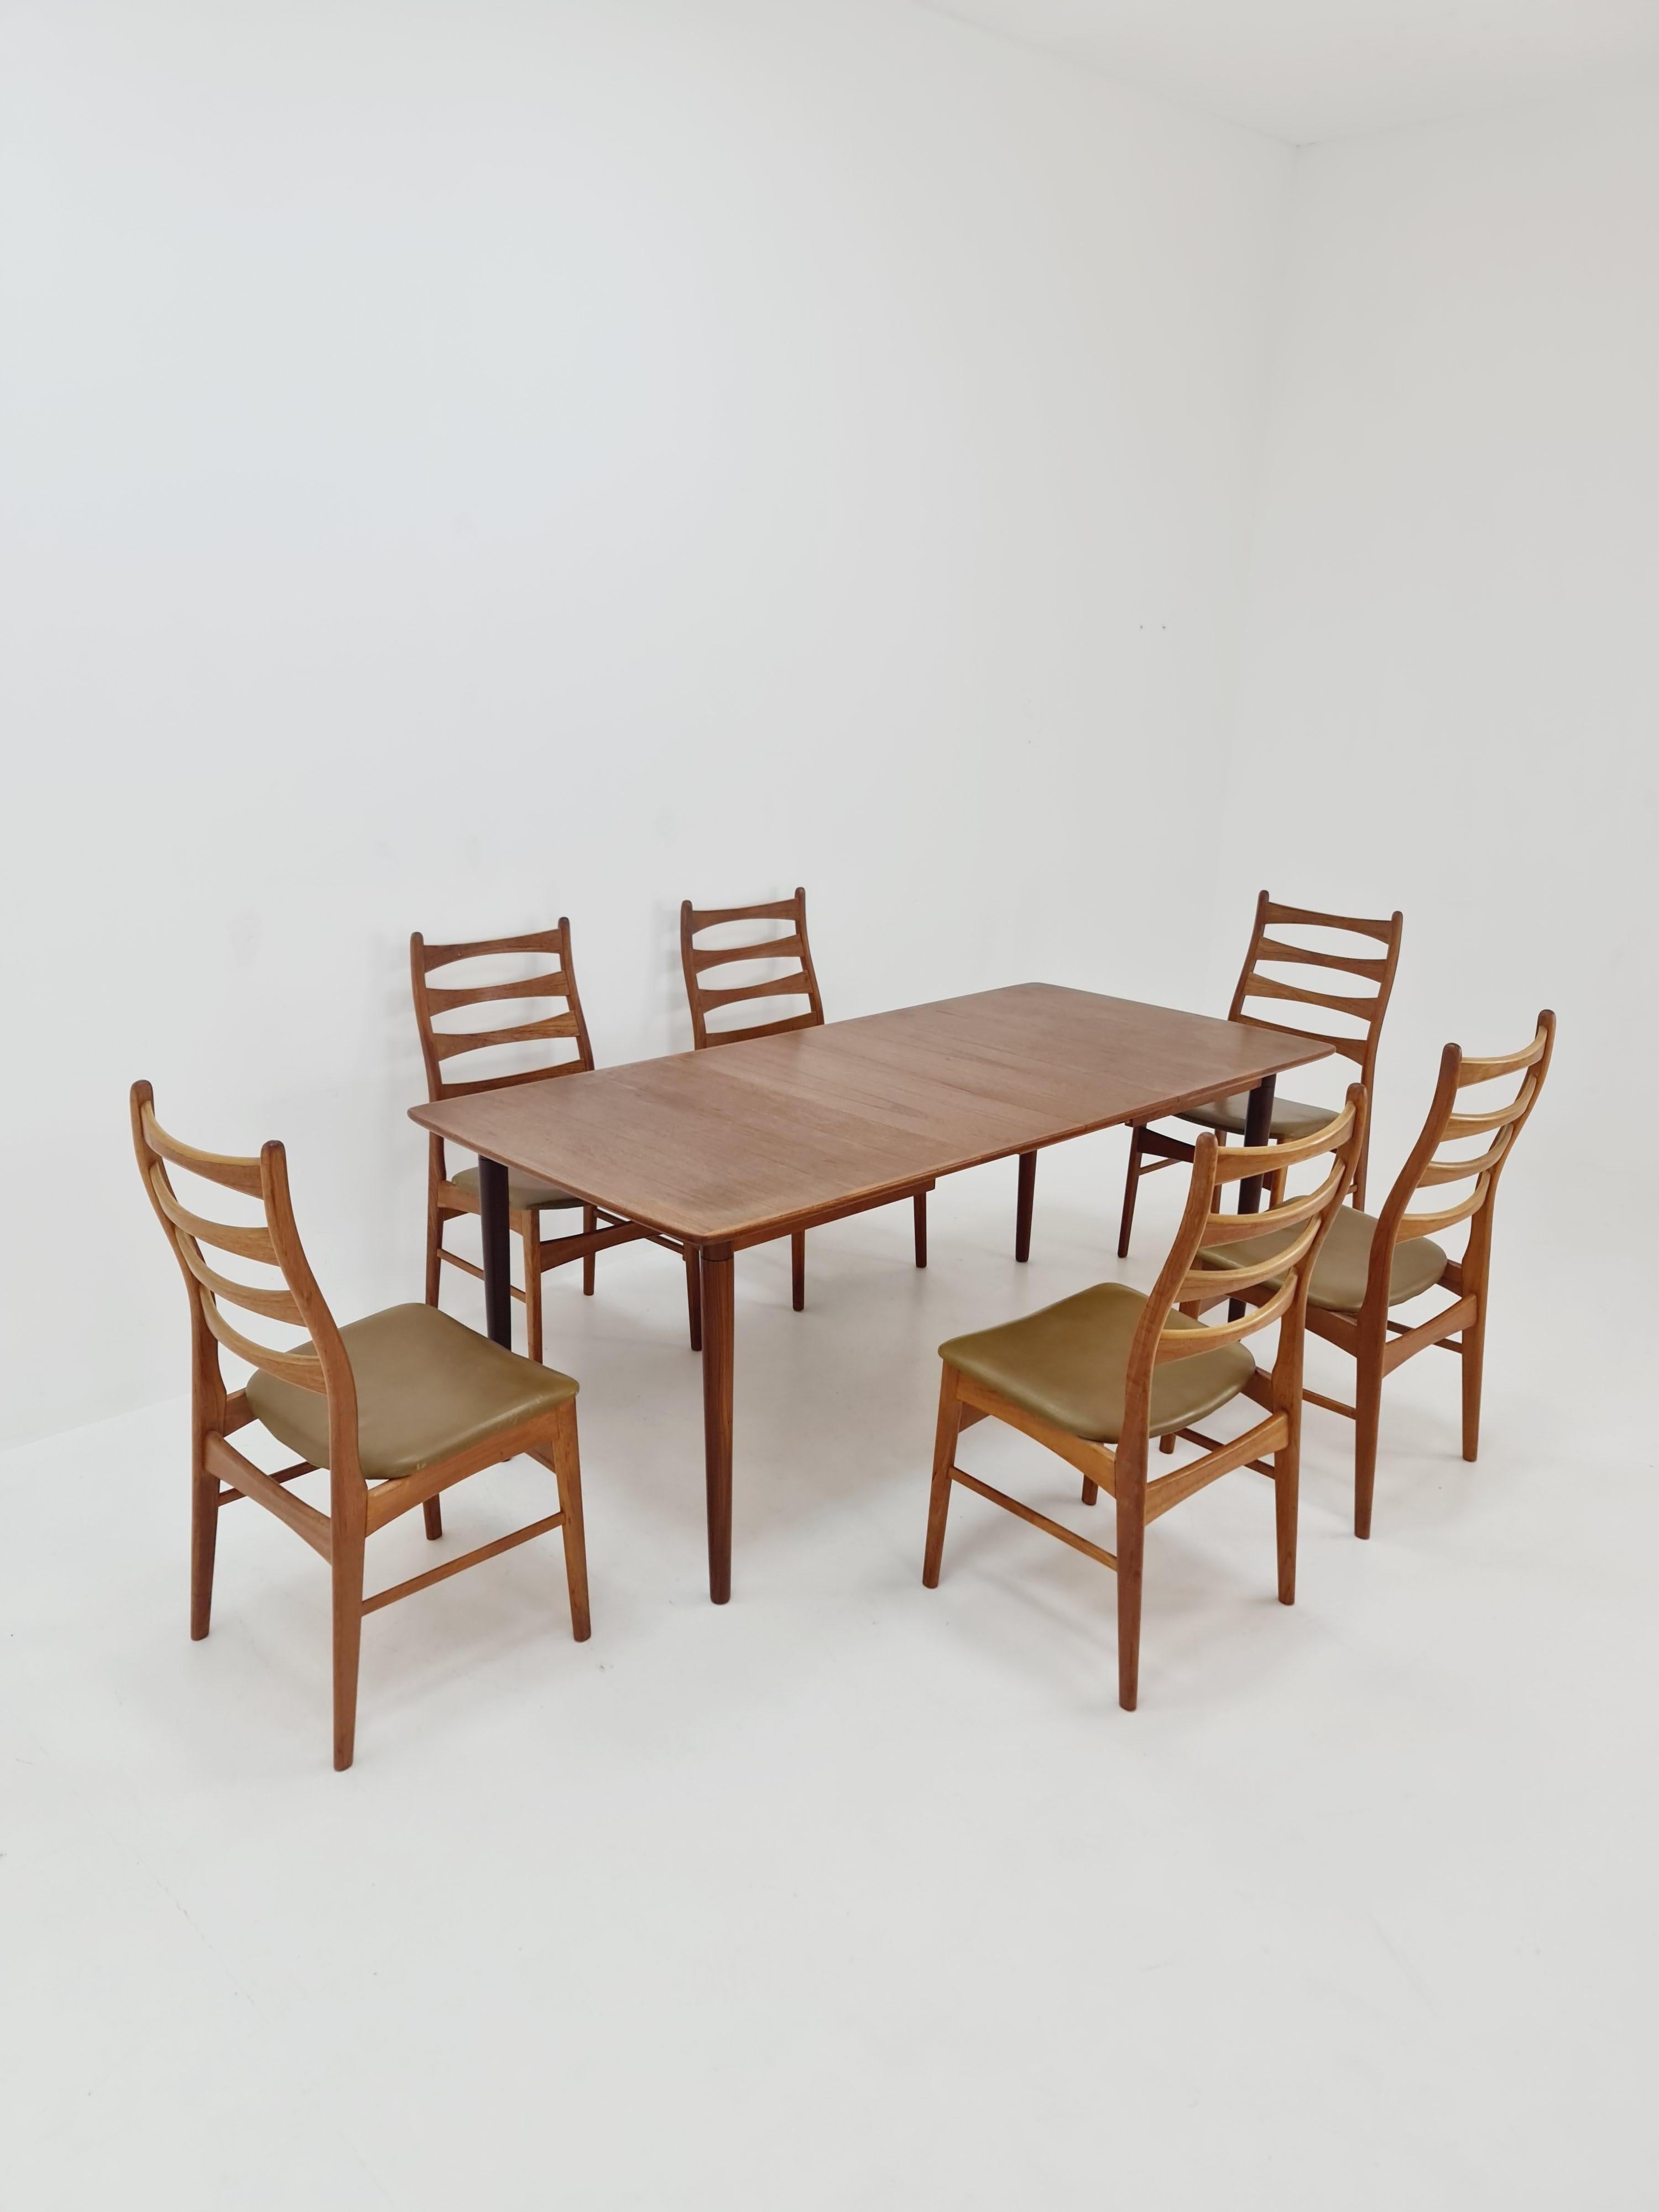 Dänische Esszimmerstühle aus Teakholz mit Ledersitzen von Viborg stolfabrik  1960er Jahre, Satz von 6


Die Stuhlrahmen sind aus massivem Teakholz gefertigt und befinden sich in einem guten Zustand.

Hergestellt in Dänemark in den 60er